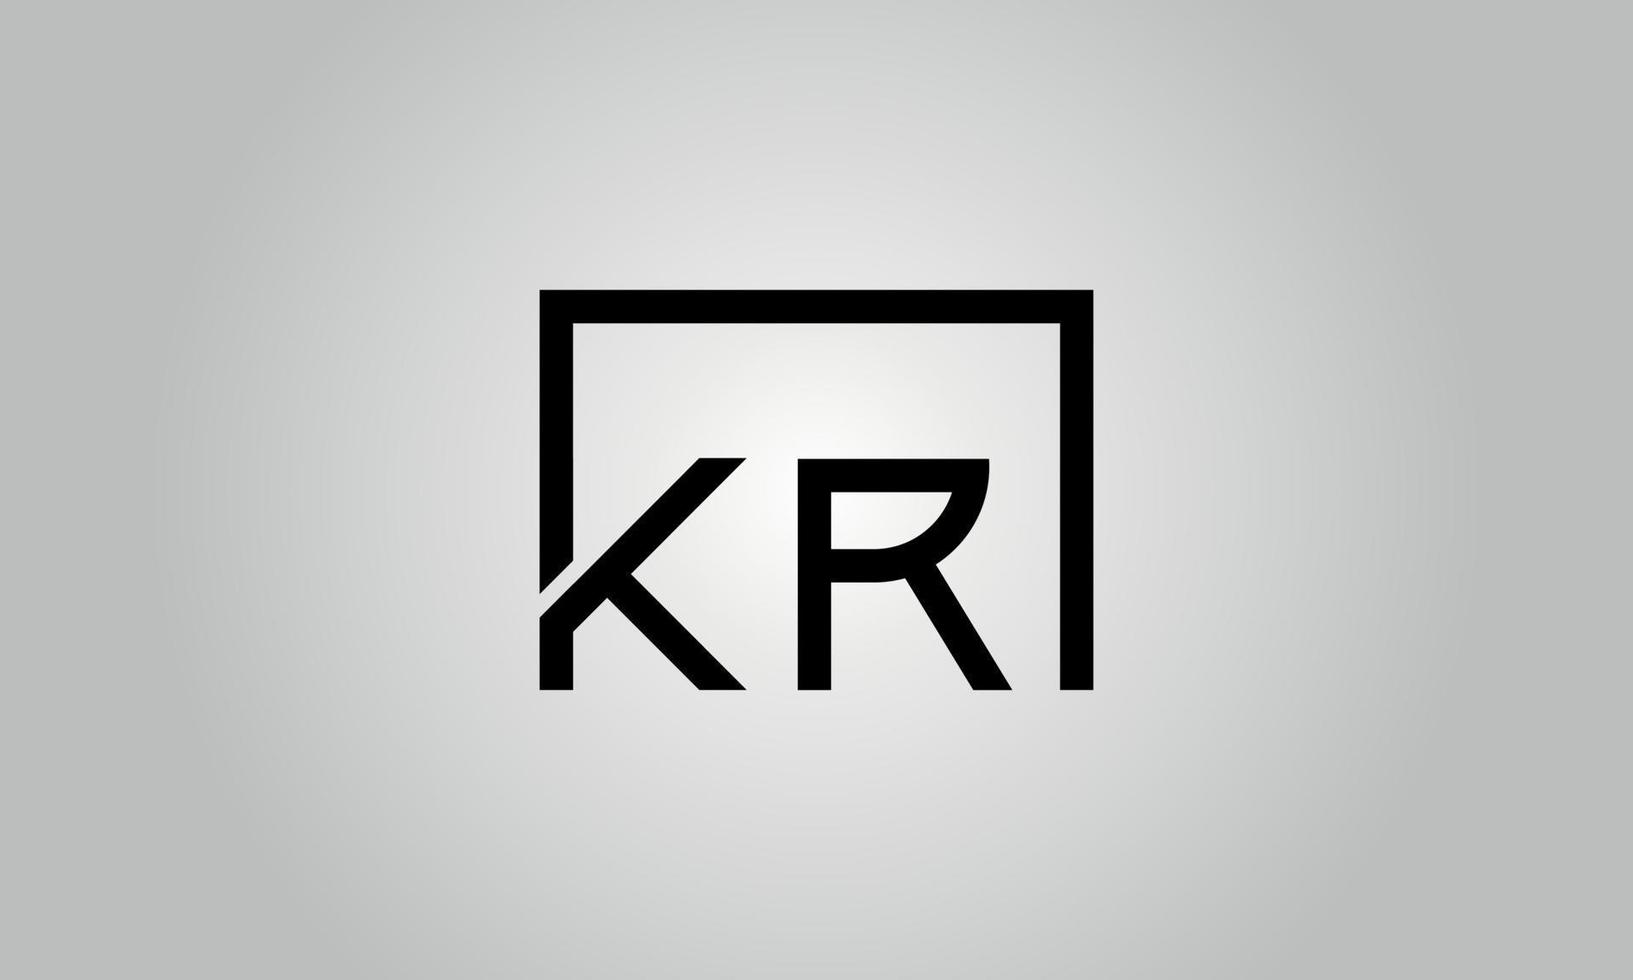 brief kr logo ontwerp. kr logo met plein vorm in zwart kleuren vector vrij vector sjabloon.